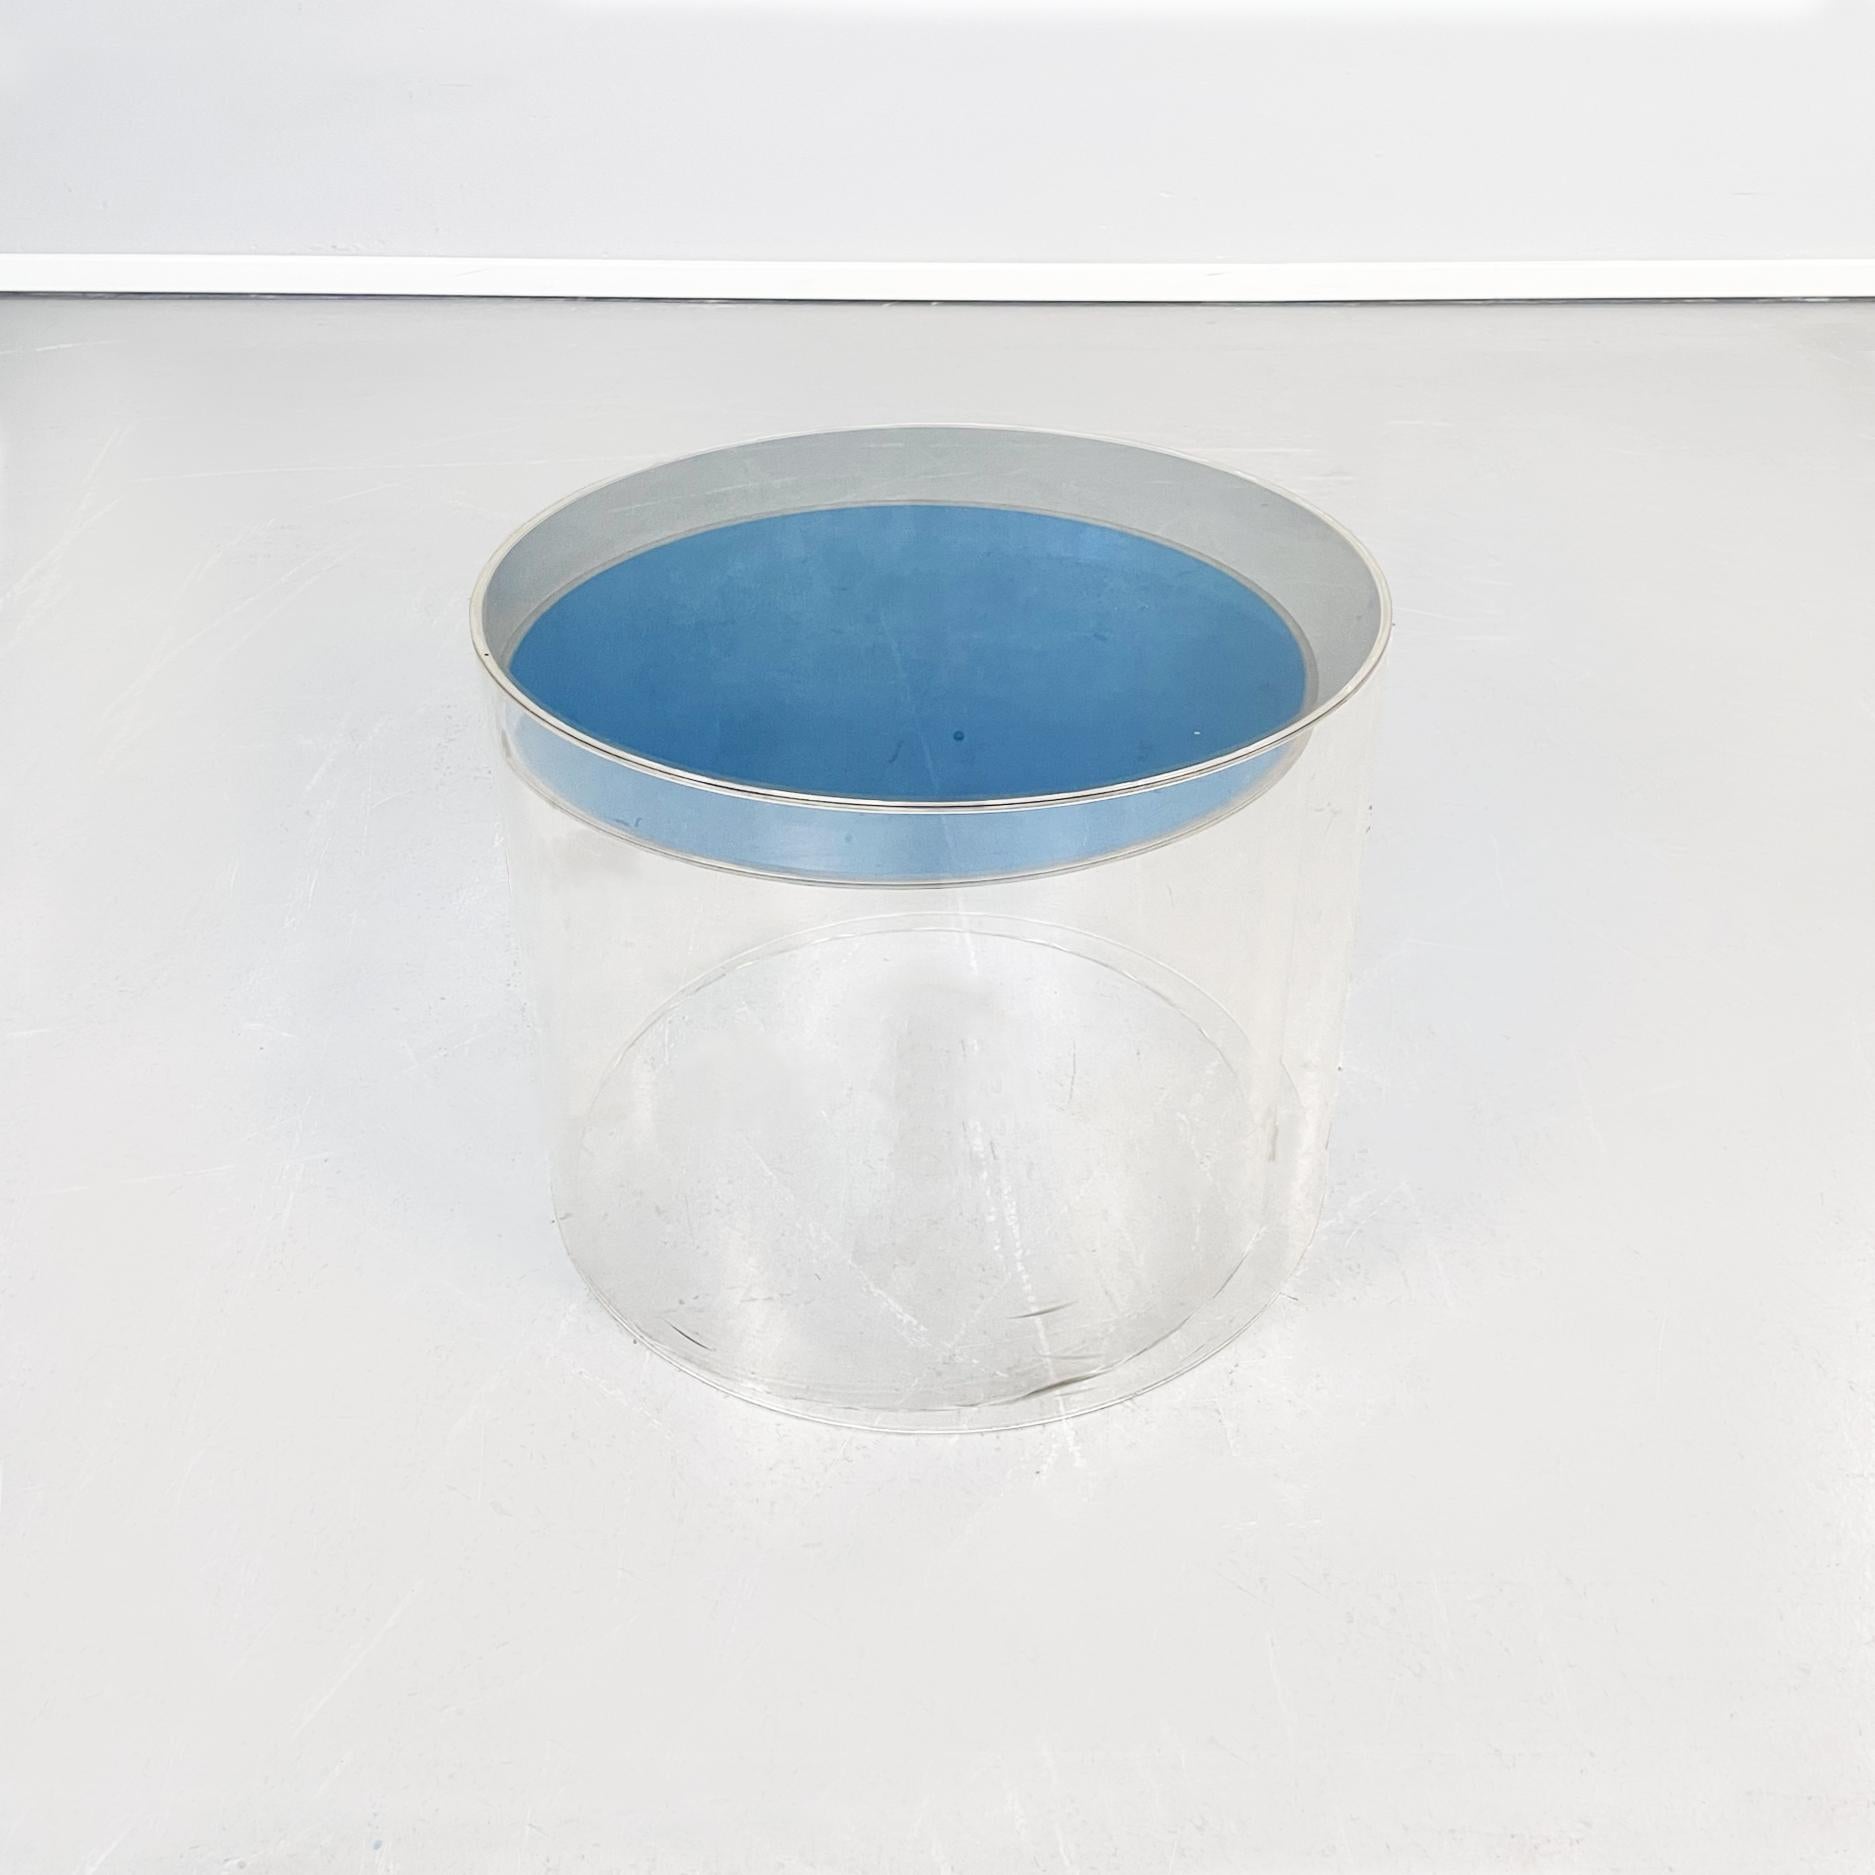 Tables basses cylindriques postmodernes italiennes en plexiglas gris et bleu, années 2000
Paire de tables basses cylindriques, en plexiglas. La table la plus haute a un plateau rond en gris, tandis que la plus petite est en bleu clair. Les côtés